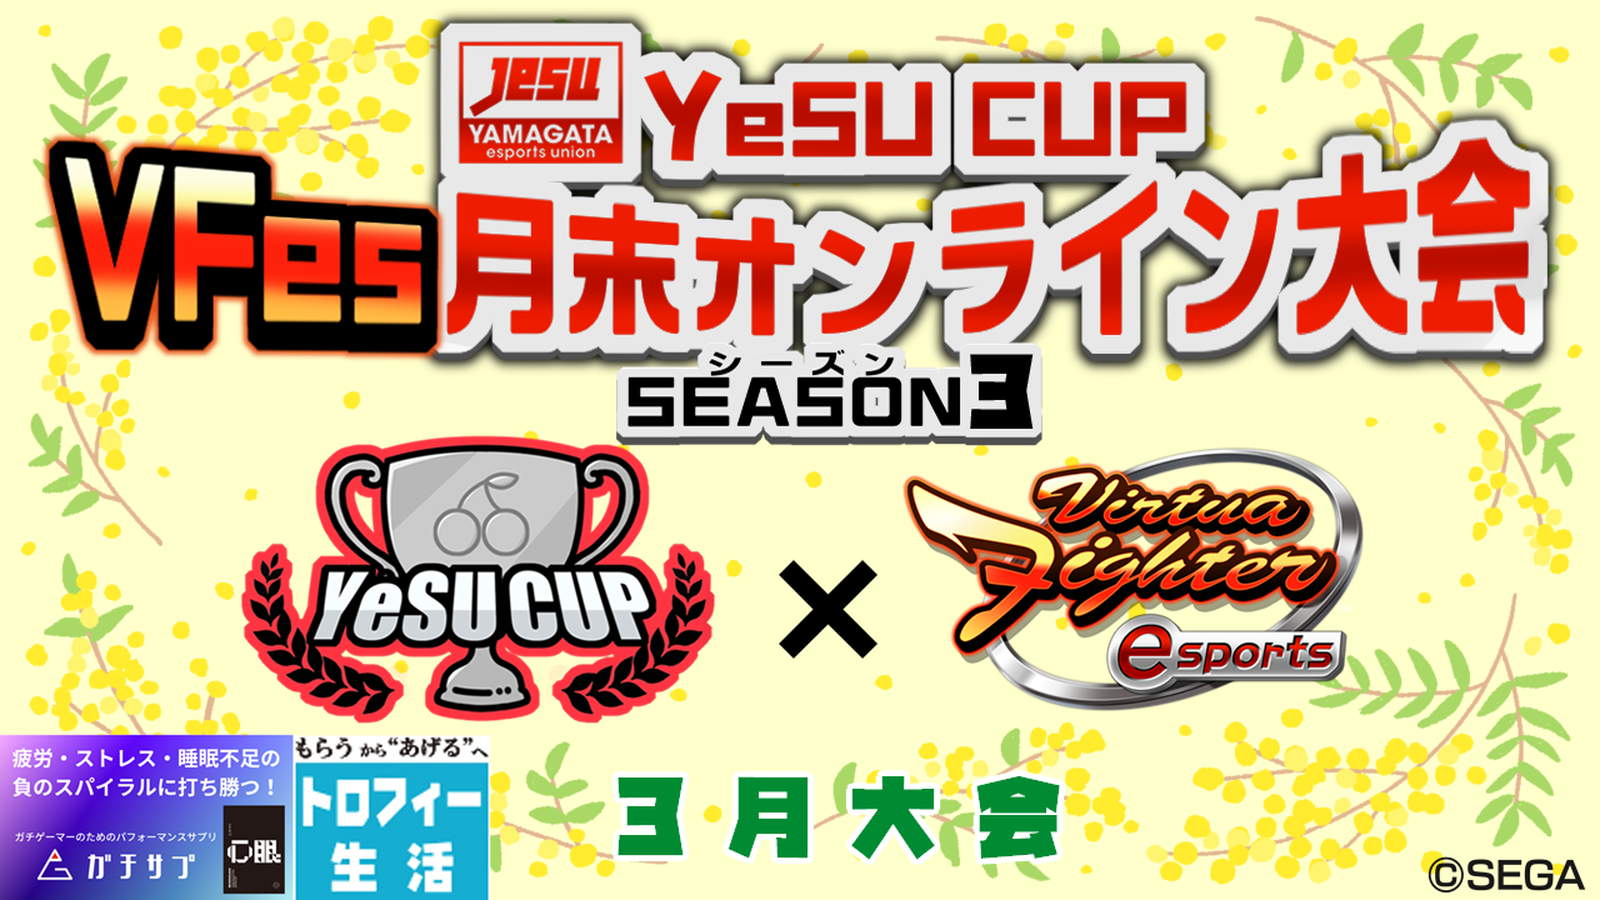 第9回 YeSU CUP VFes月末オンライン大会 -Season3-